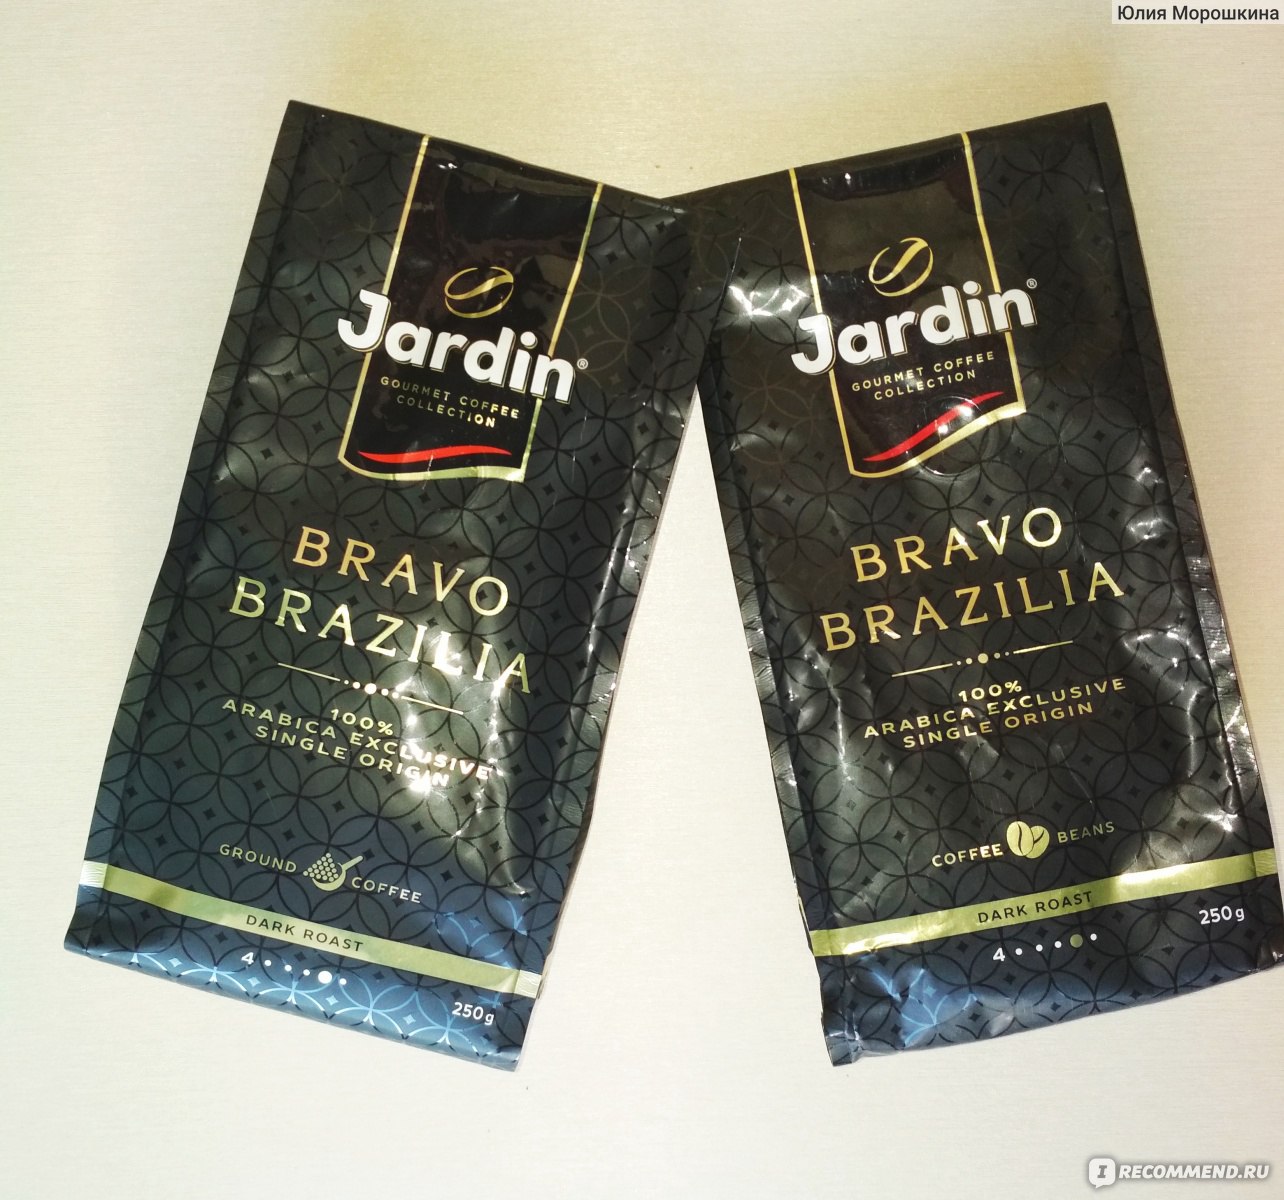 Жардин Браво Бразилия кофе молотый 250г